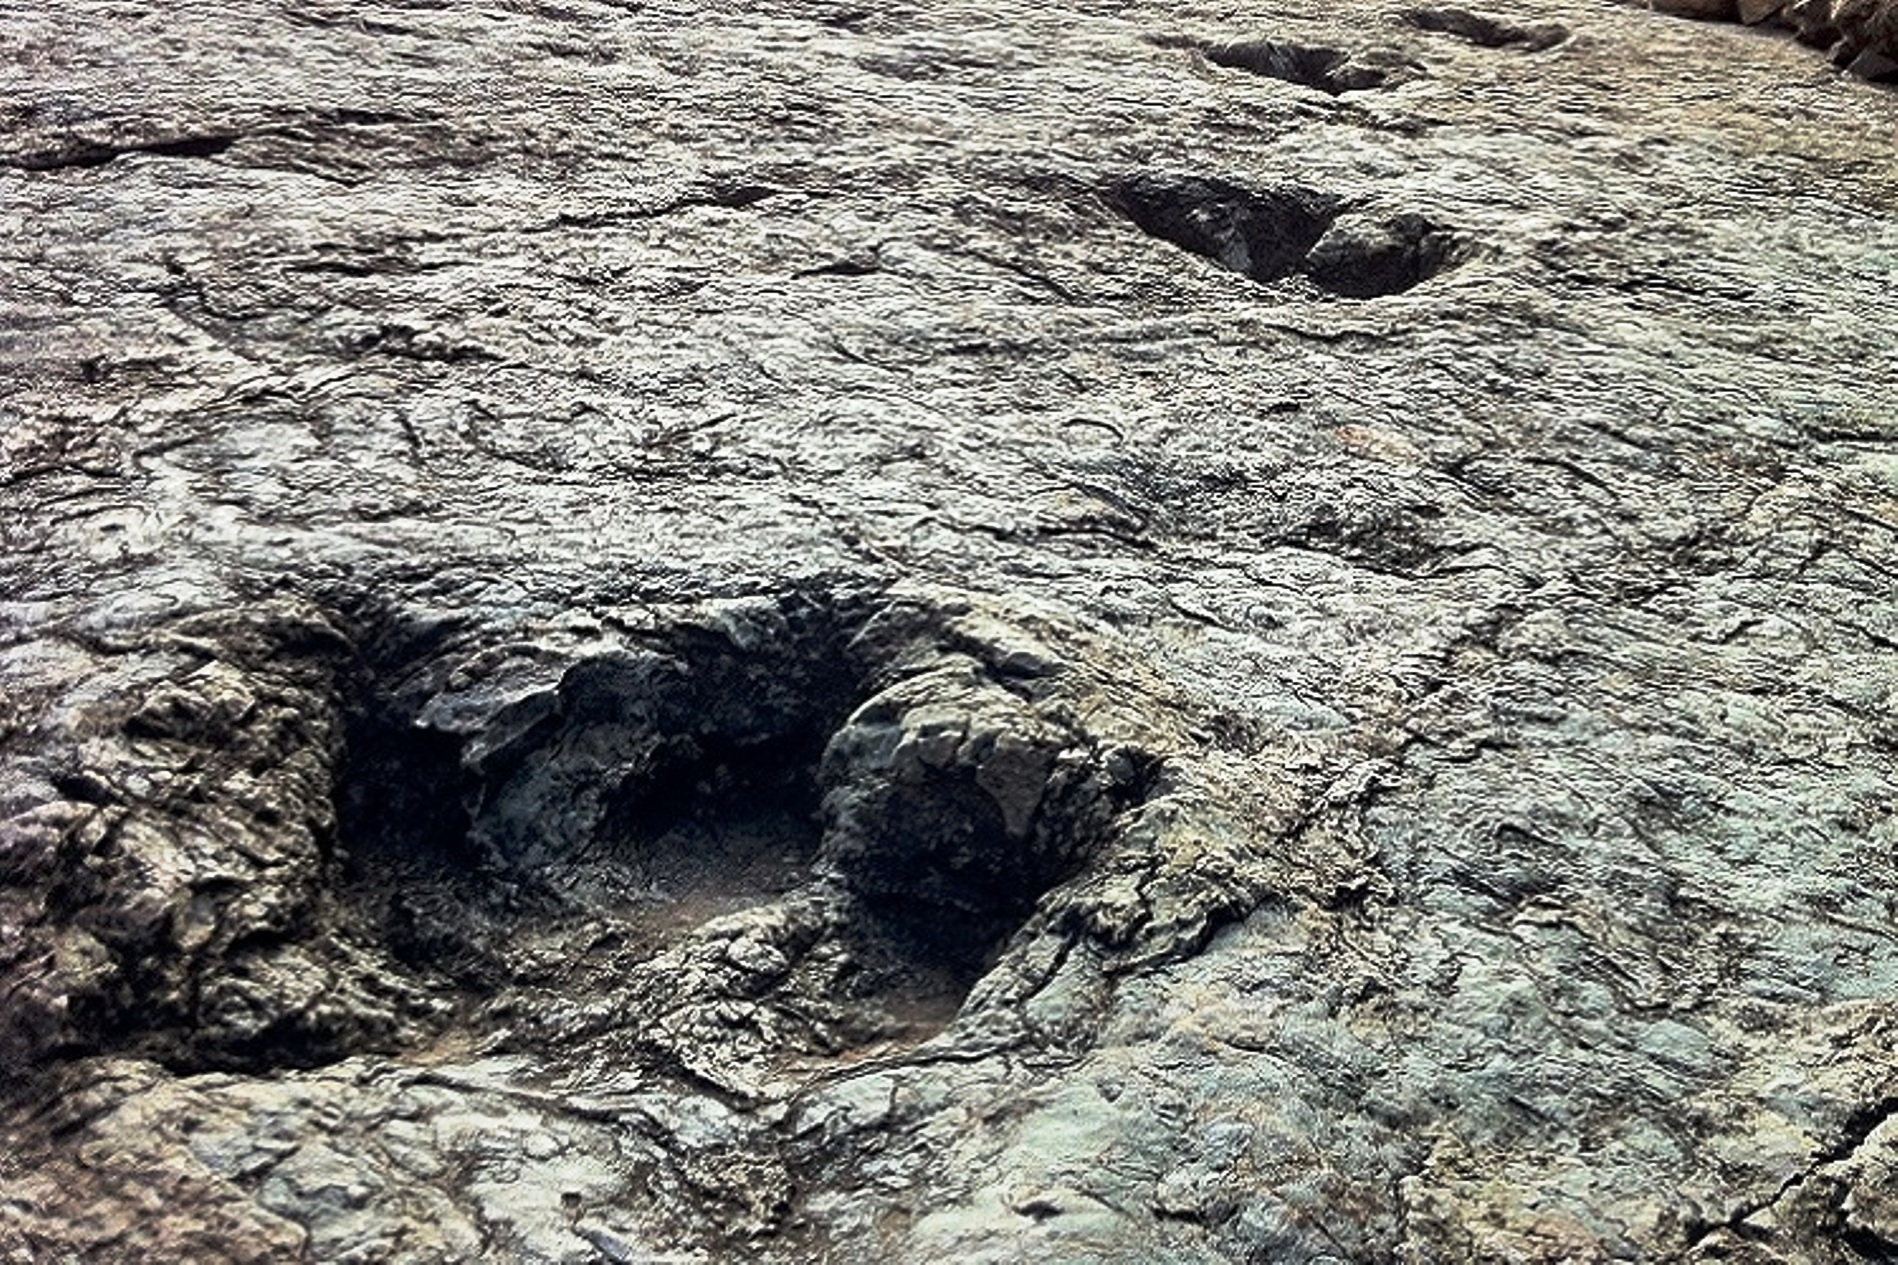 Les empreintes de dinosaures datant du Crétacé supérieur sont très communes près de la capitale administrative de la Bolivie, Sucre. Celles montrées sur cette photo proviennent du site de Niñu Mayu, voisin de celui où vient d'être trouvée une empreinte de pas d'un abélisaure. © www.sucrelife.com